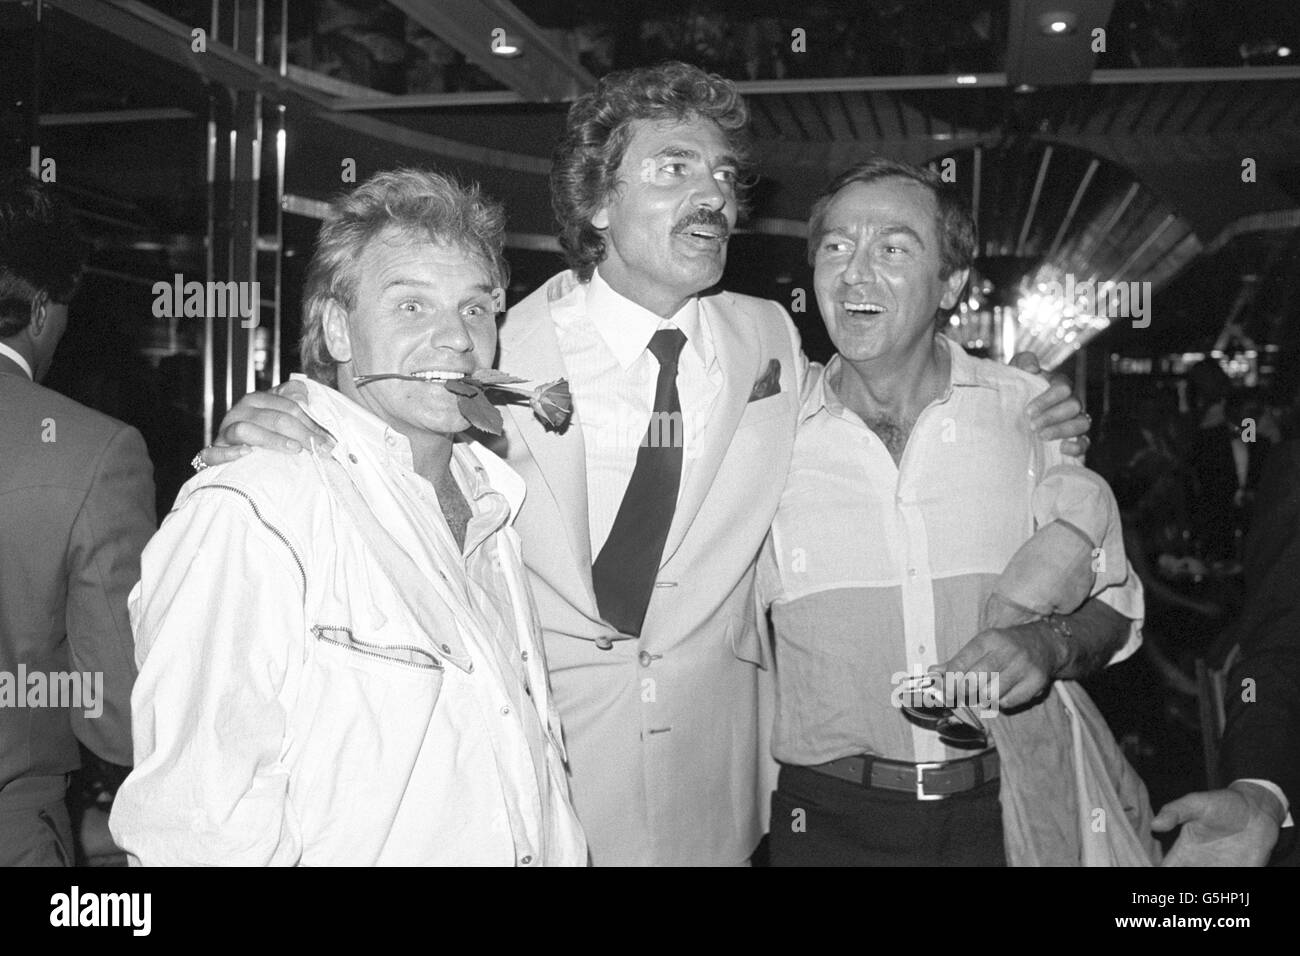 Der britische Popstar Engelbert Humperdinck (c) feiert mit den Stars Freddie Starr (l) und des O'Connor (r) nach einem Konzert in der Royal Albert Hall in London eine Party in London. Stockfoto